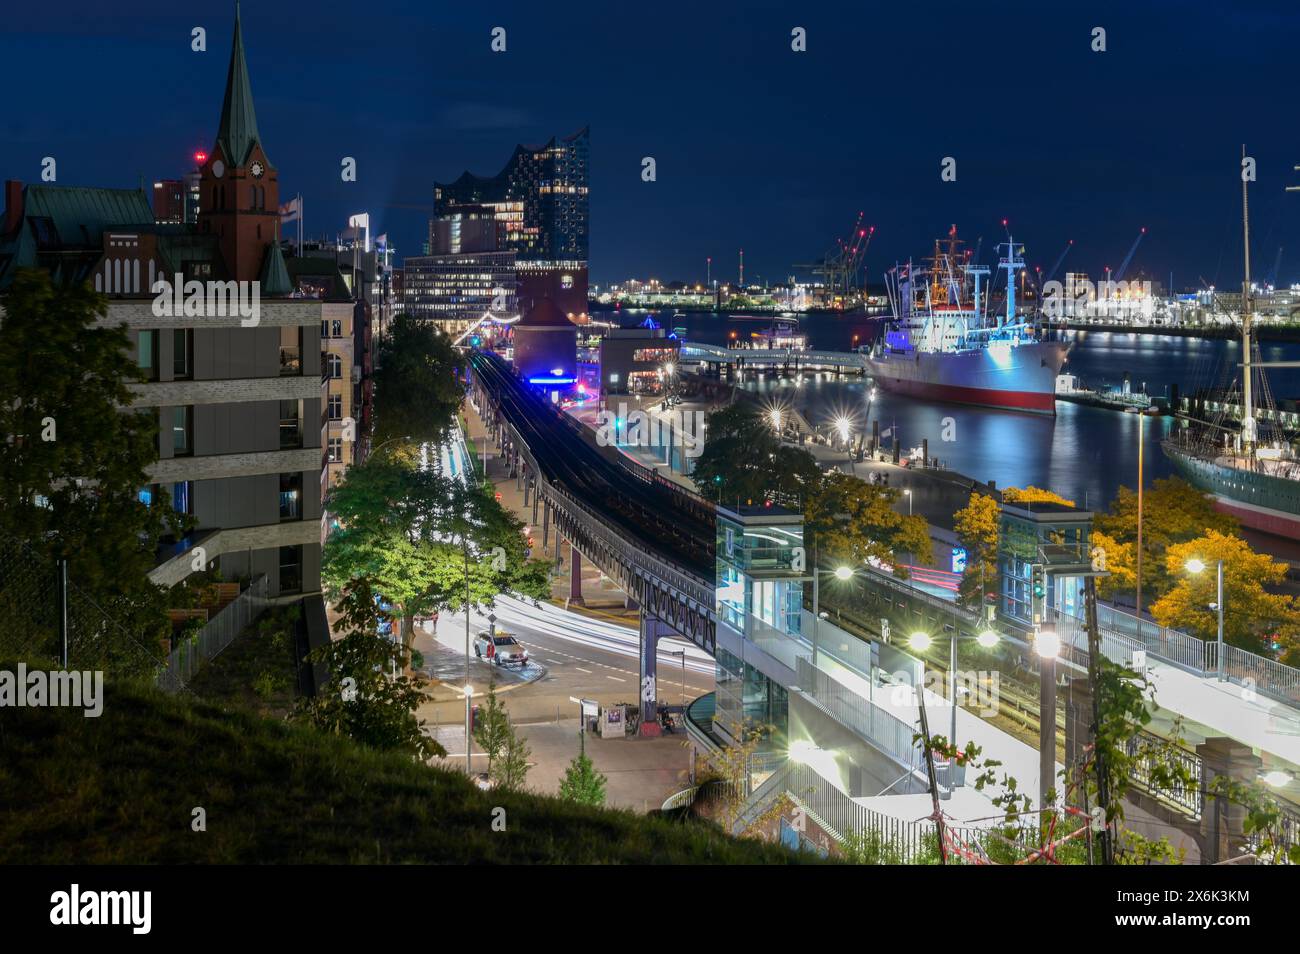 Vue de nuit avec bateaux, Elbe Philharmonic Hall et station de S-Bahn, Hambourg, Allemagne Banque D'Images